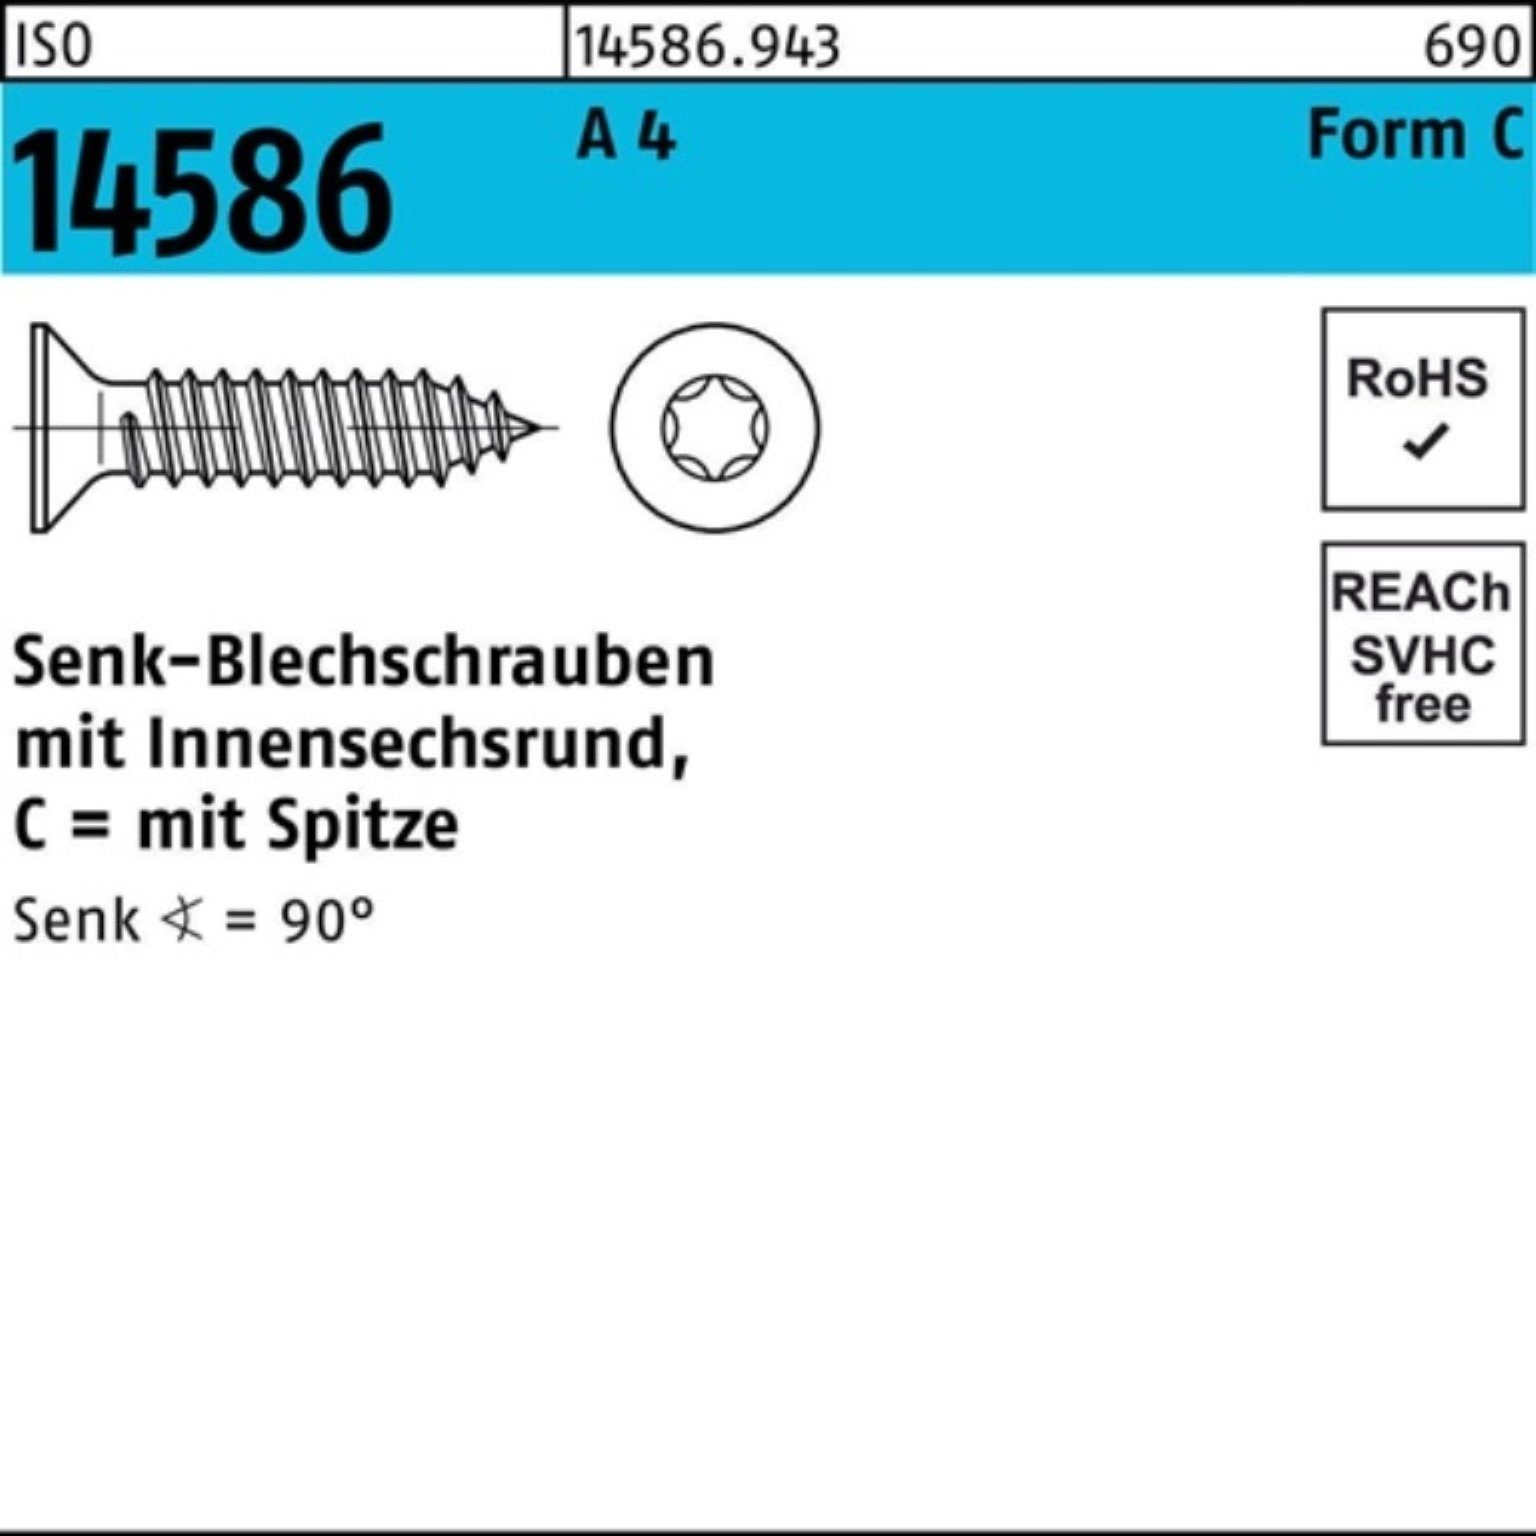 ISO Senkblechschraube Schraube 4 ISR/Spitze 250 250er 14586 Pack A 60-T25 Reyher 4,8x